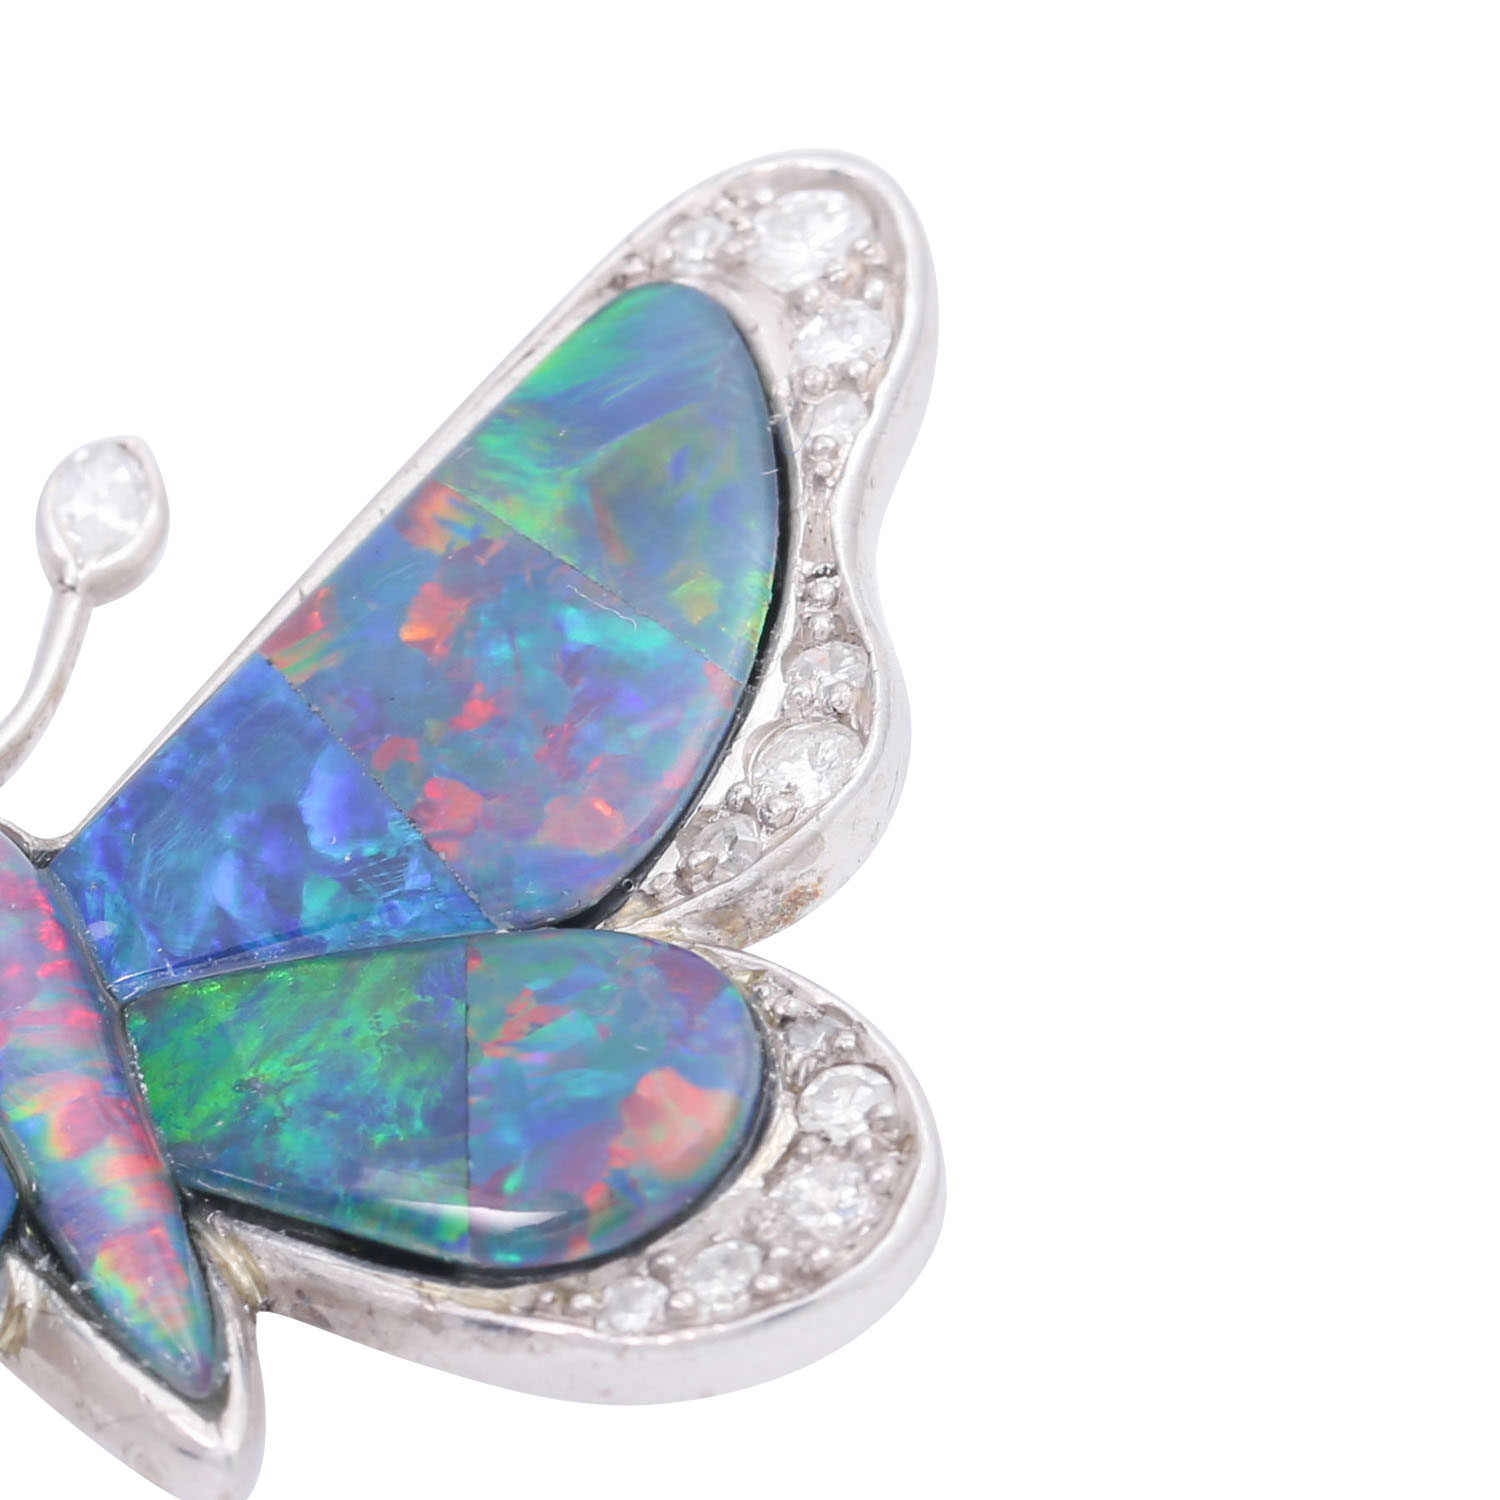 Brosche "Schmetterling" mit Opaltripletten und Diamanten von ca. 0,2 ct, - Image 4 of 5